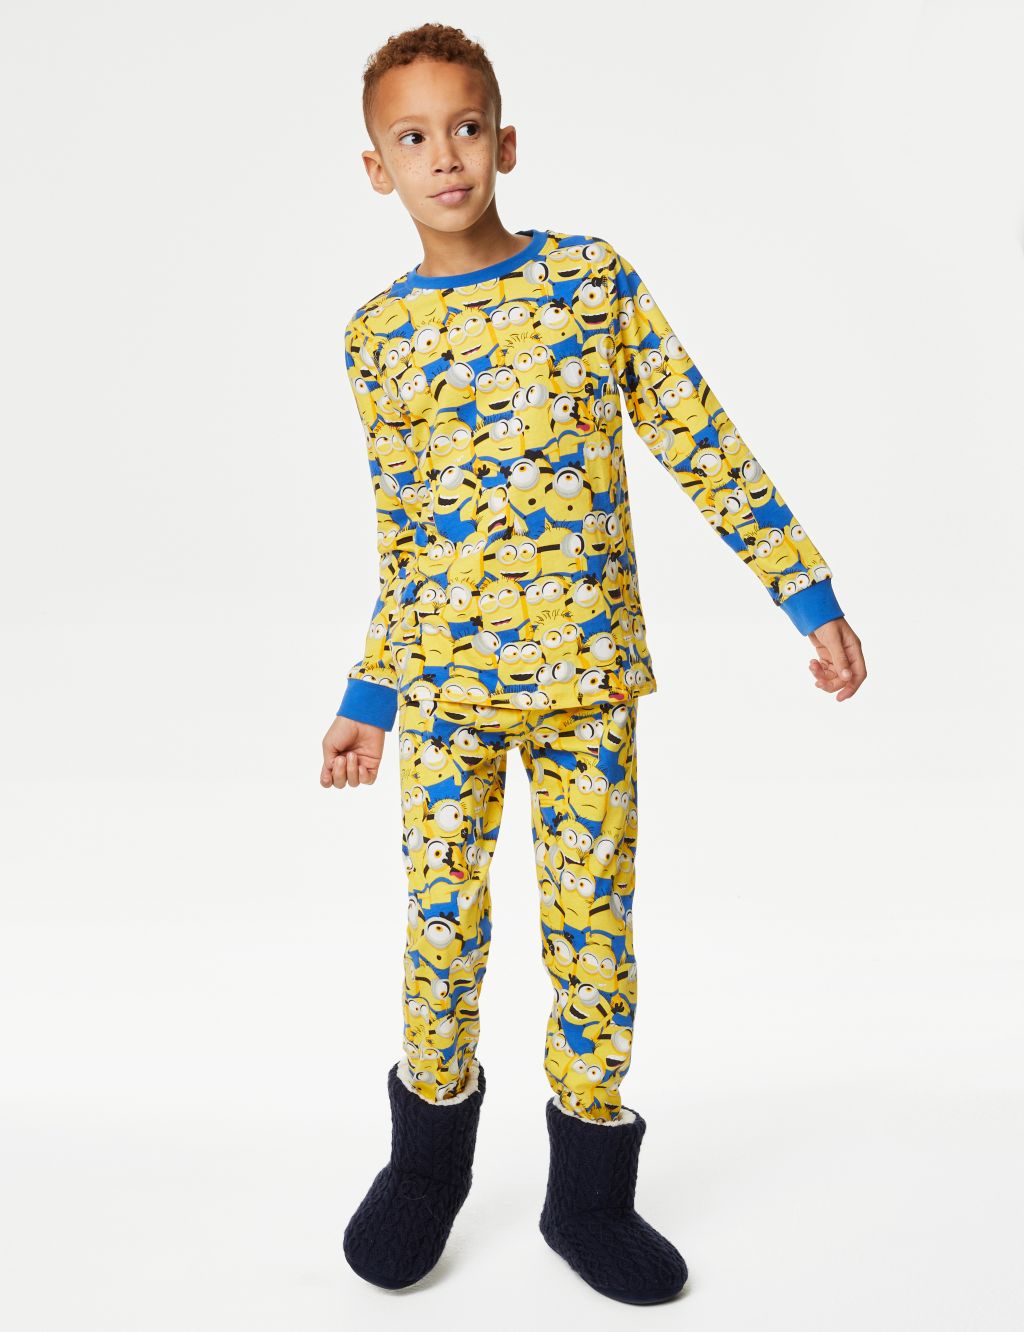 Minions™ Pyjamas (3-16 Yrs) image 1